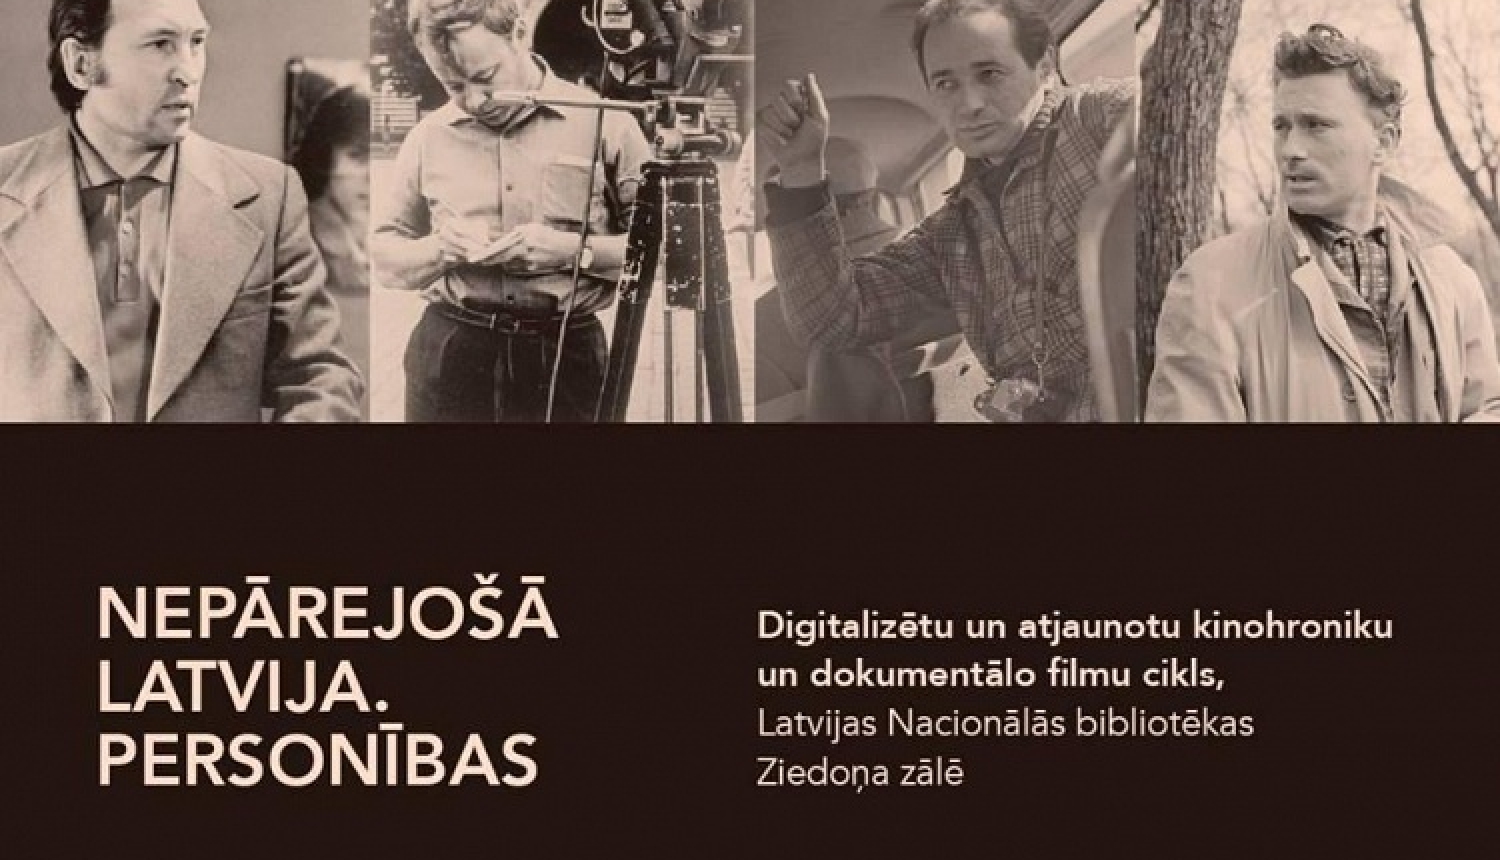 Digitalizētu un atjaunotu hroniku un filmu cikls “Nepārejošā Latvija. Personības”